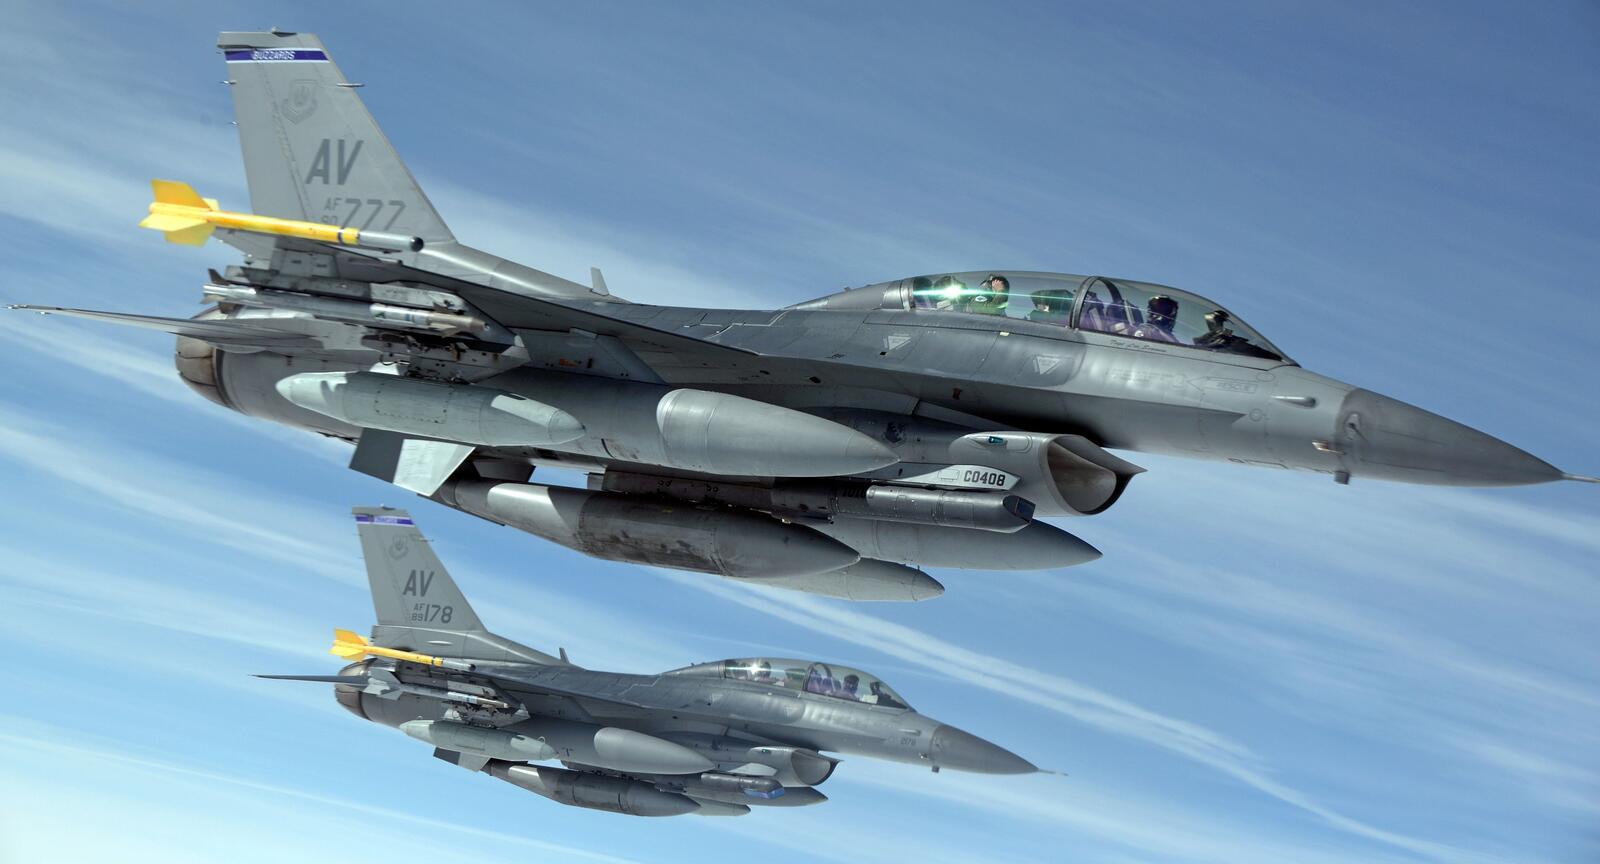 免费照片装备导弹的美国战斗机飞上蓝天